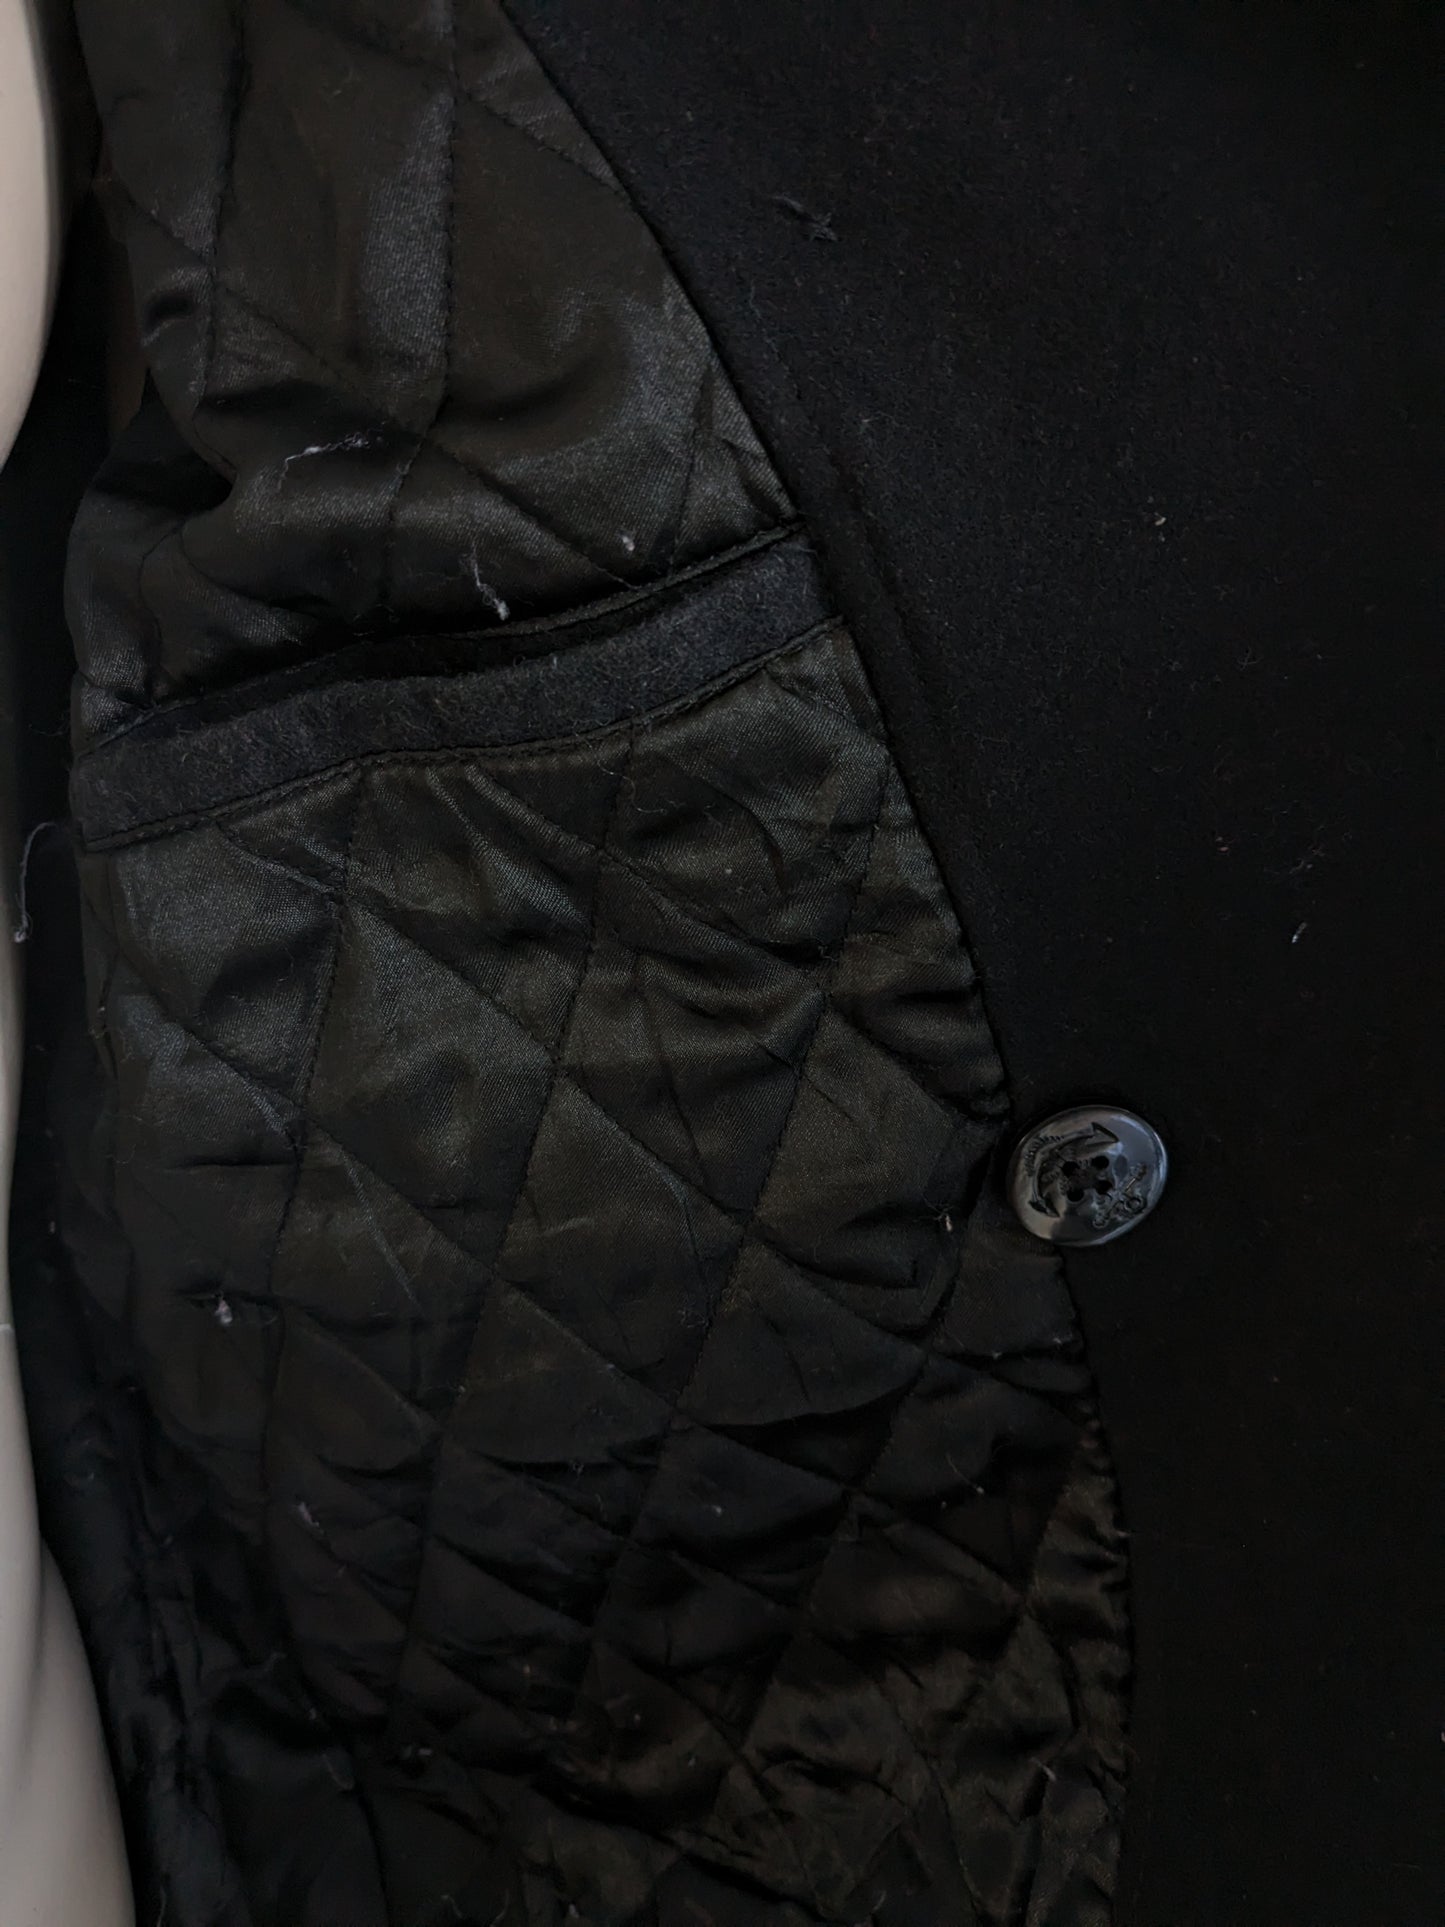 Giacca di lana Nautica con bottoni più grandi. Colorato nero. Dimensione 2xl / xxl.